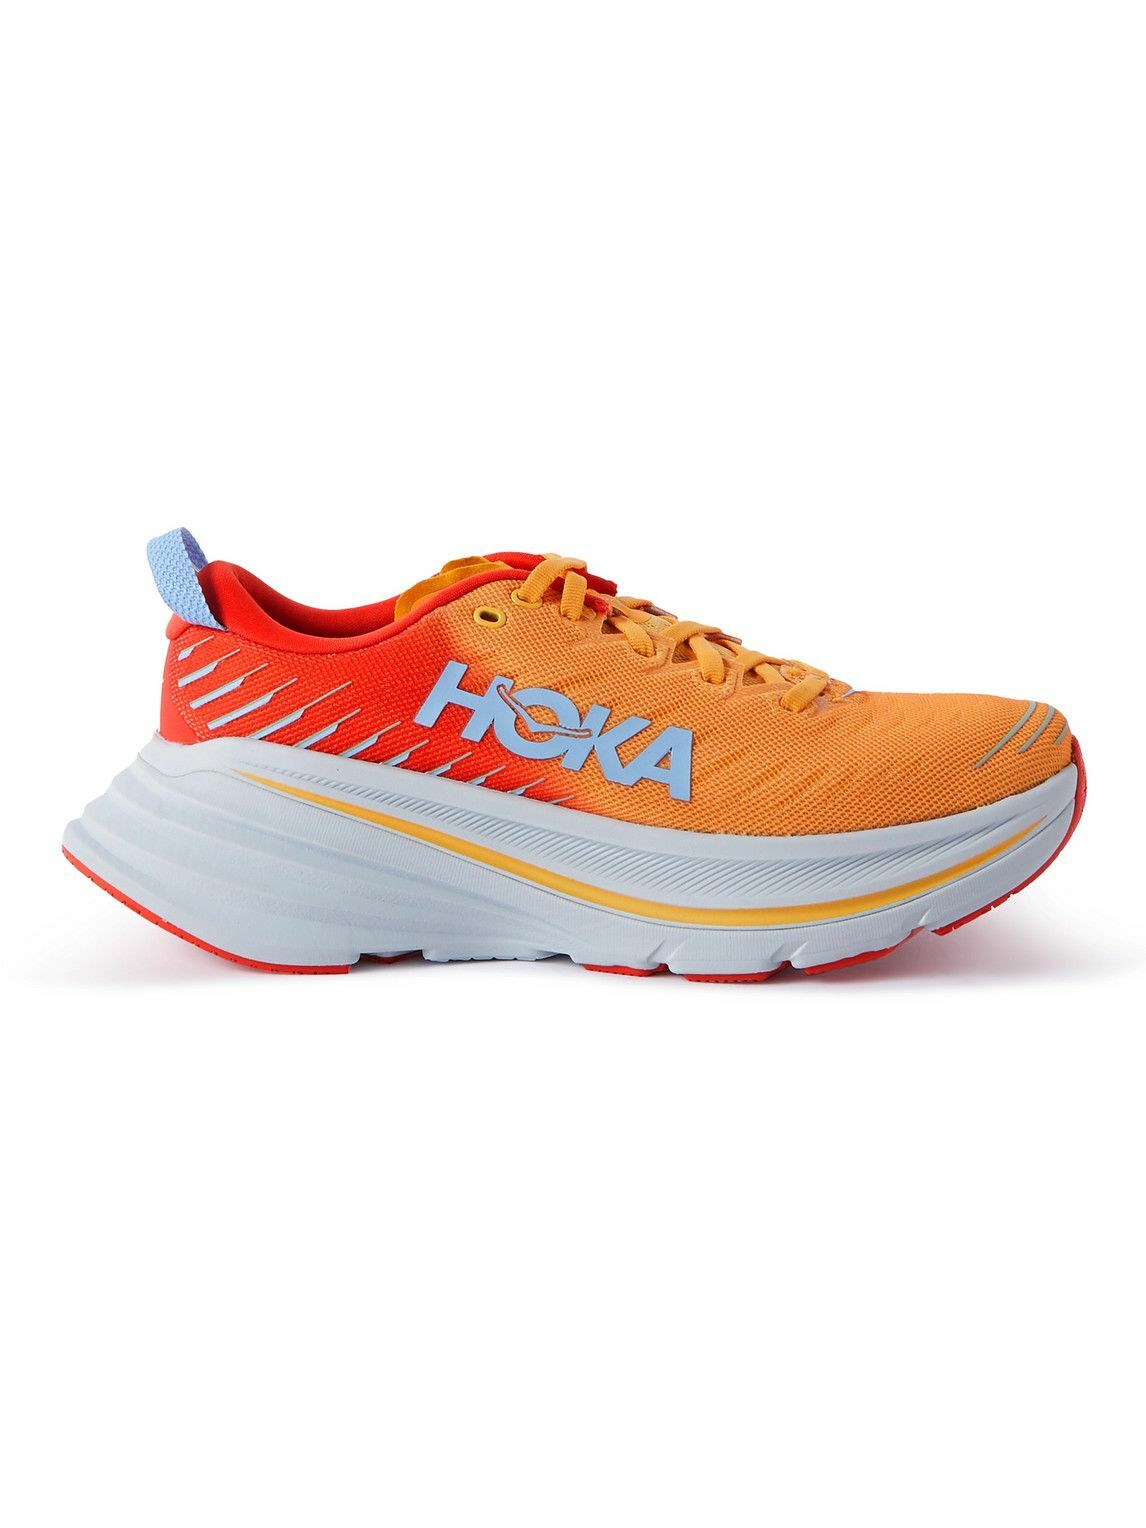 Hoka One One - Bondi X Mesh Running Sneakers - Orange Hoka One One